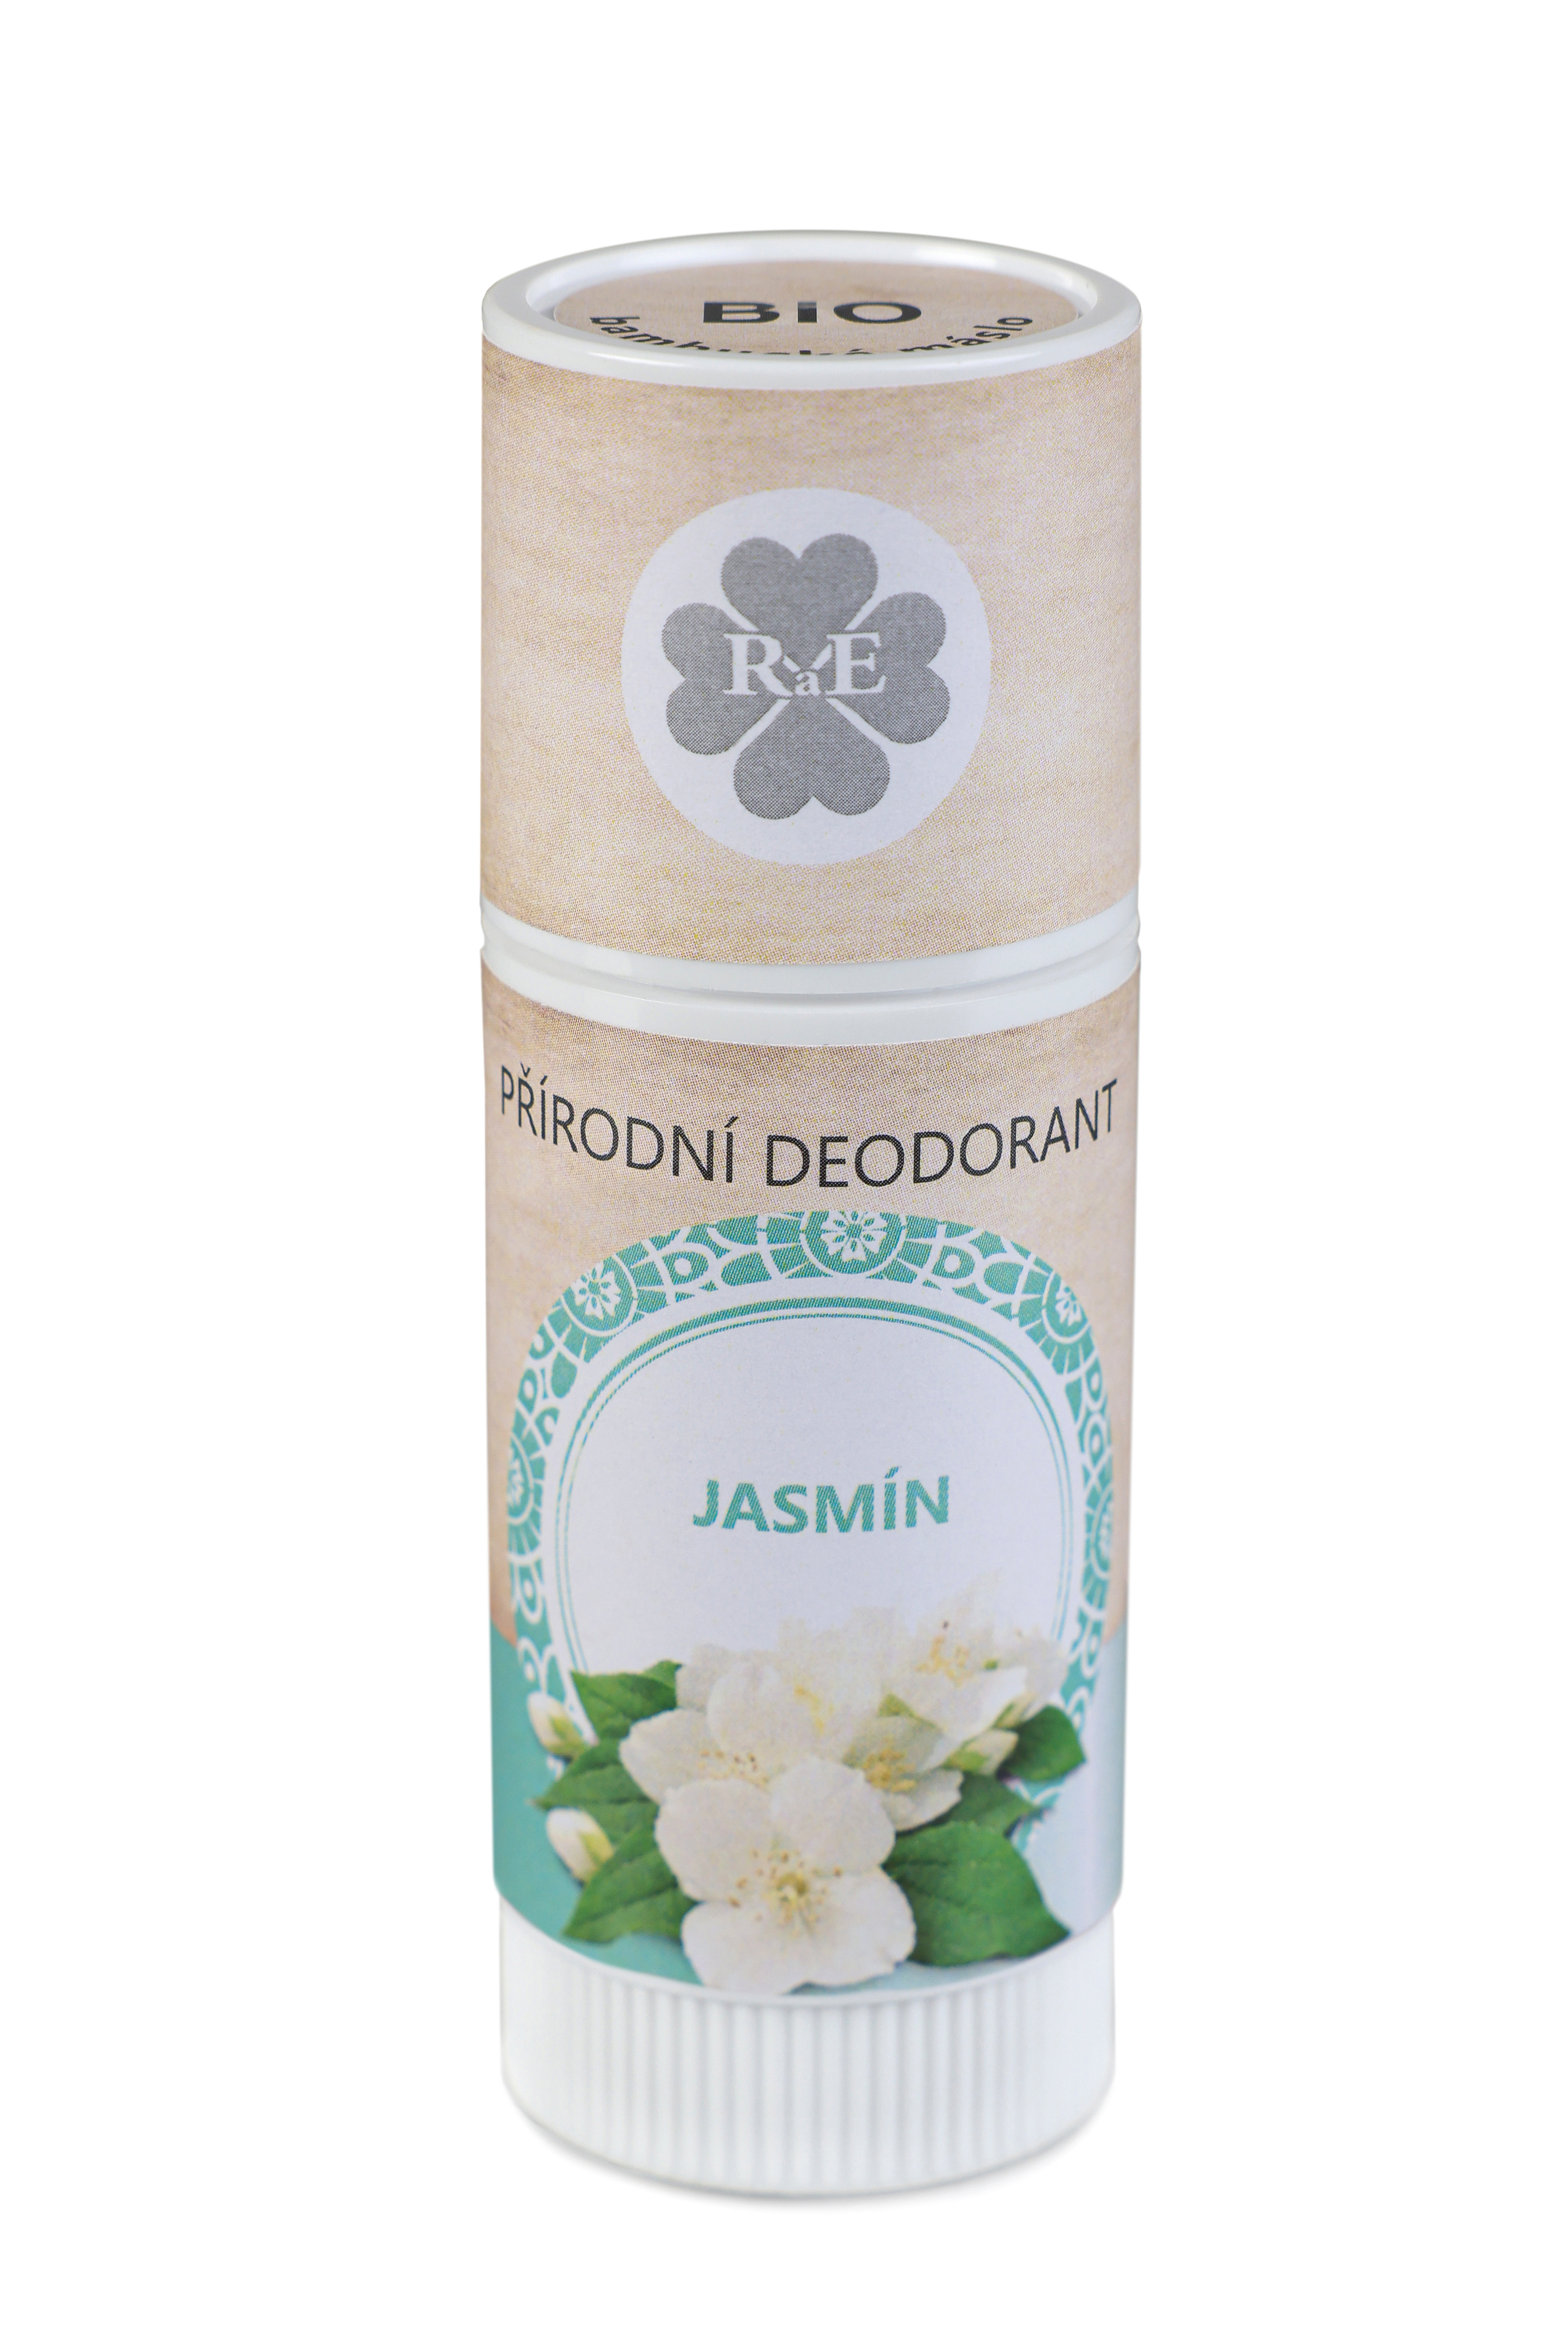 RaE Přírodní deodorant Jasmín tuba 25ml